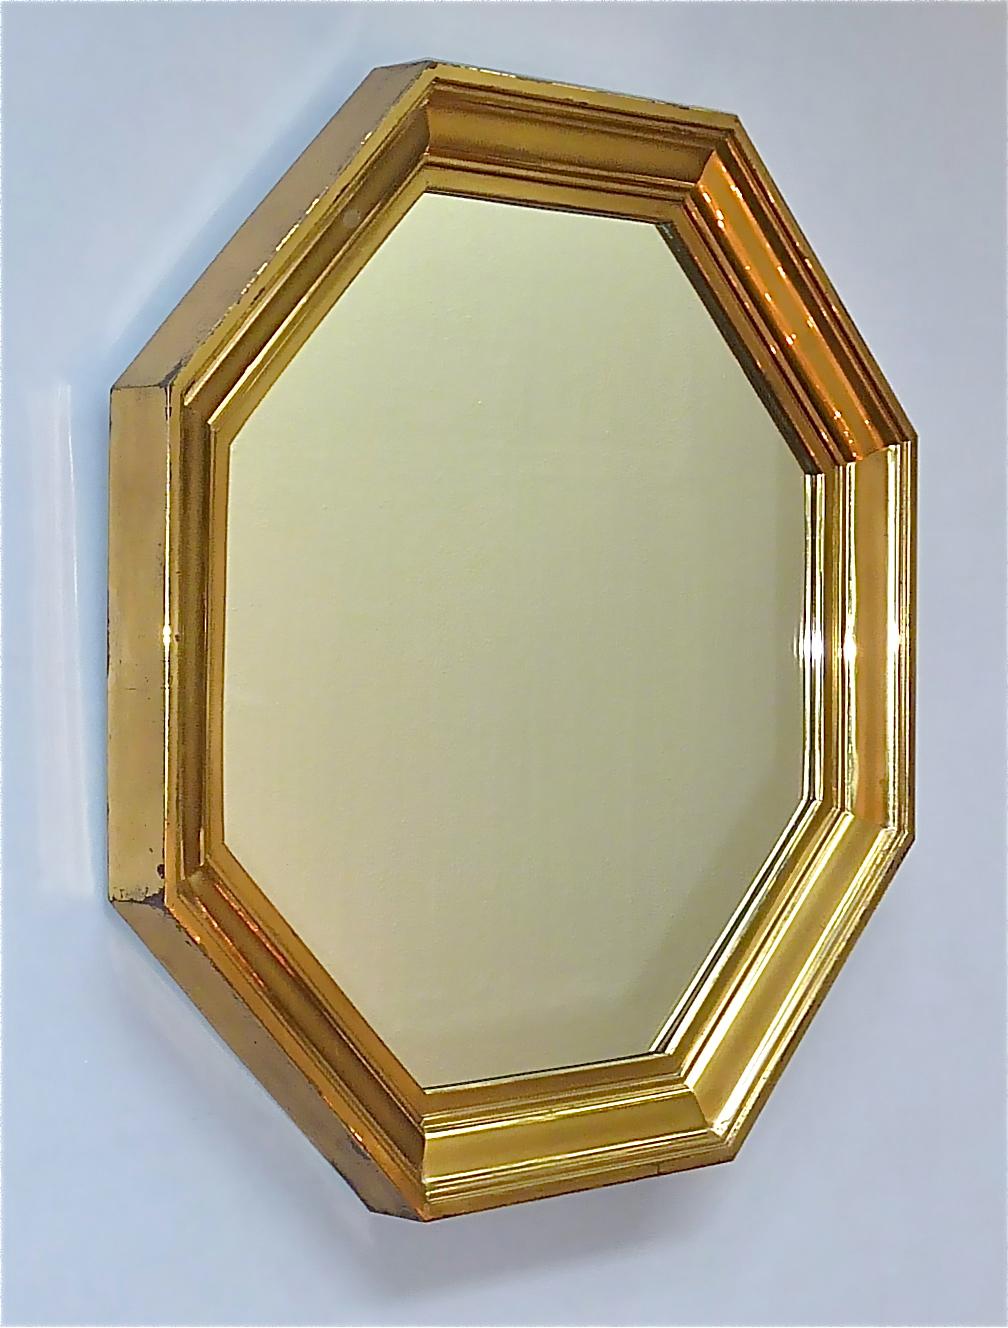 Fantastischer großer achteckiger Spiegel von Maison Jansen, Frankreich, etwa 1970er Jahre. Wahrscheinlich von Sandro Petti oder Guy Lefevre entworfen, hat der schöne Spiegel eine achteckige Form aus einem abgestuften patinierten Messingrahmen mit